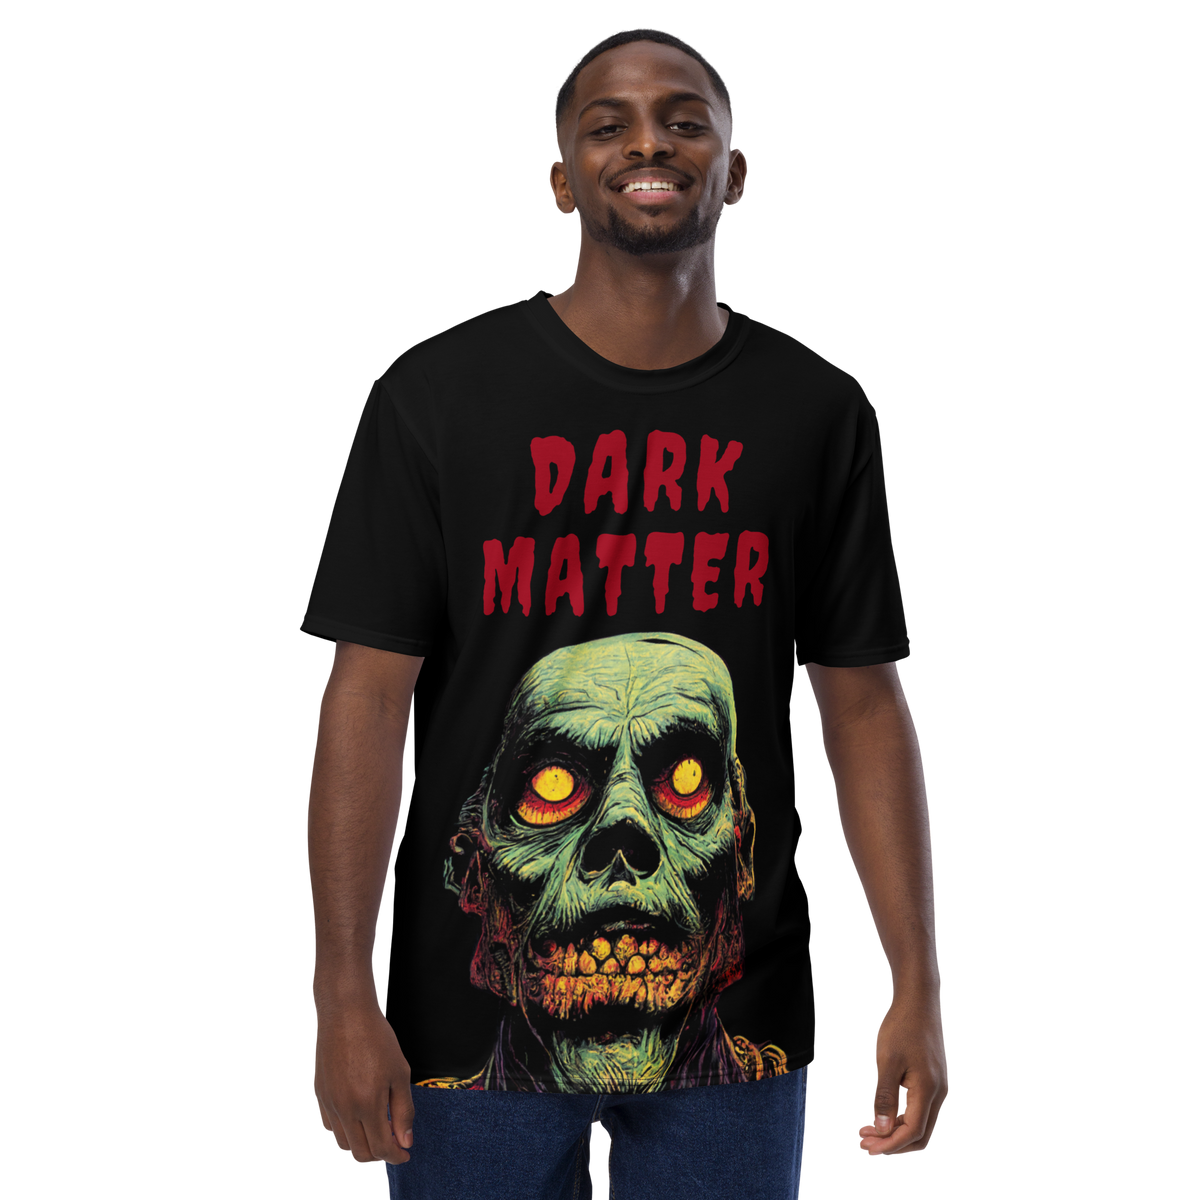 "Dark Matter Zombie" T-shirt